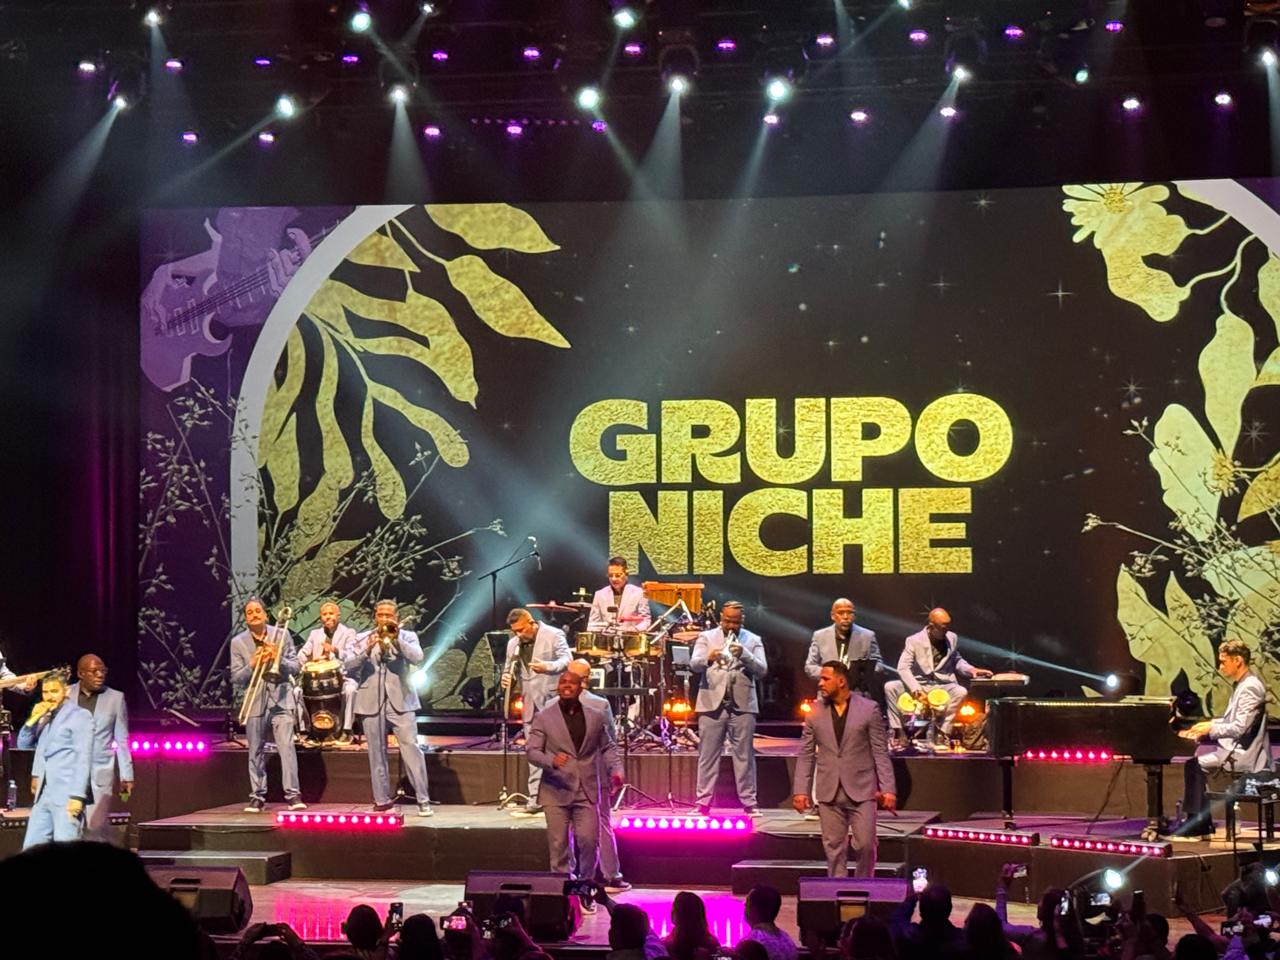 Grupo Niche conquista Perú con su tour "Cali Pachanguero"